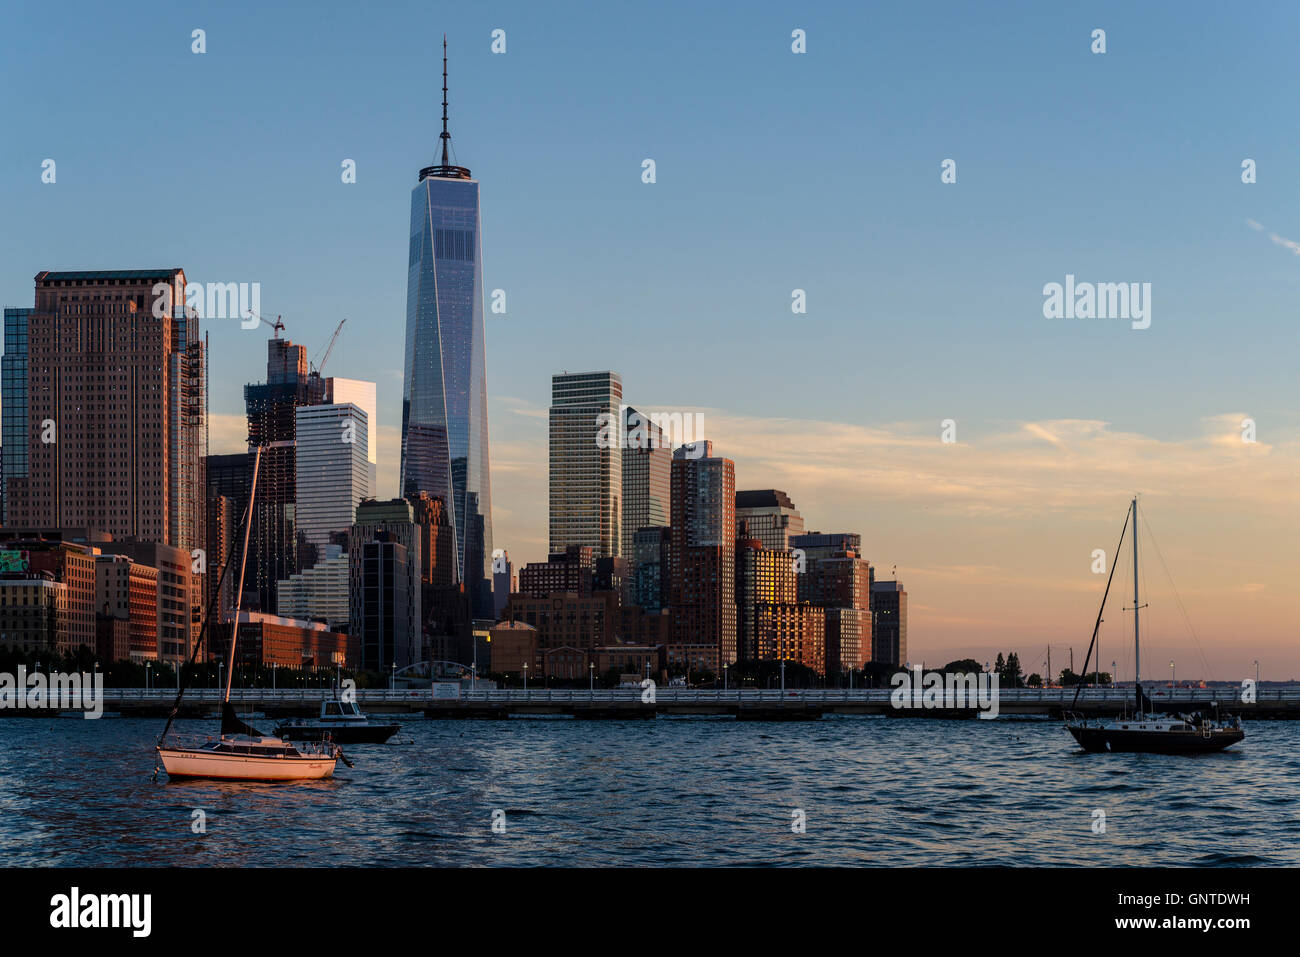 New York, Stati Uniti d'America - un commercio mondiale che si eleva al di sopra del grattacieli di Manhattan. ©Stacy Rosenstock Walsh Foto Stock